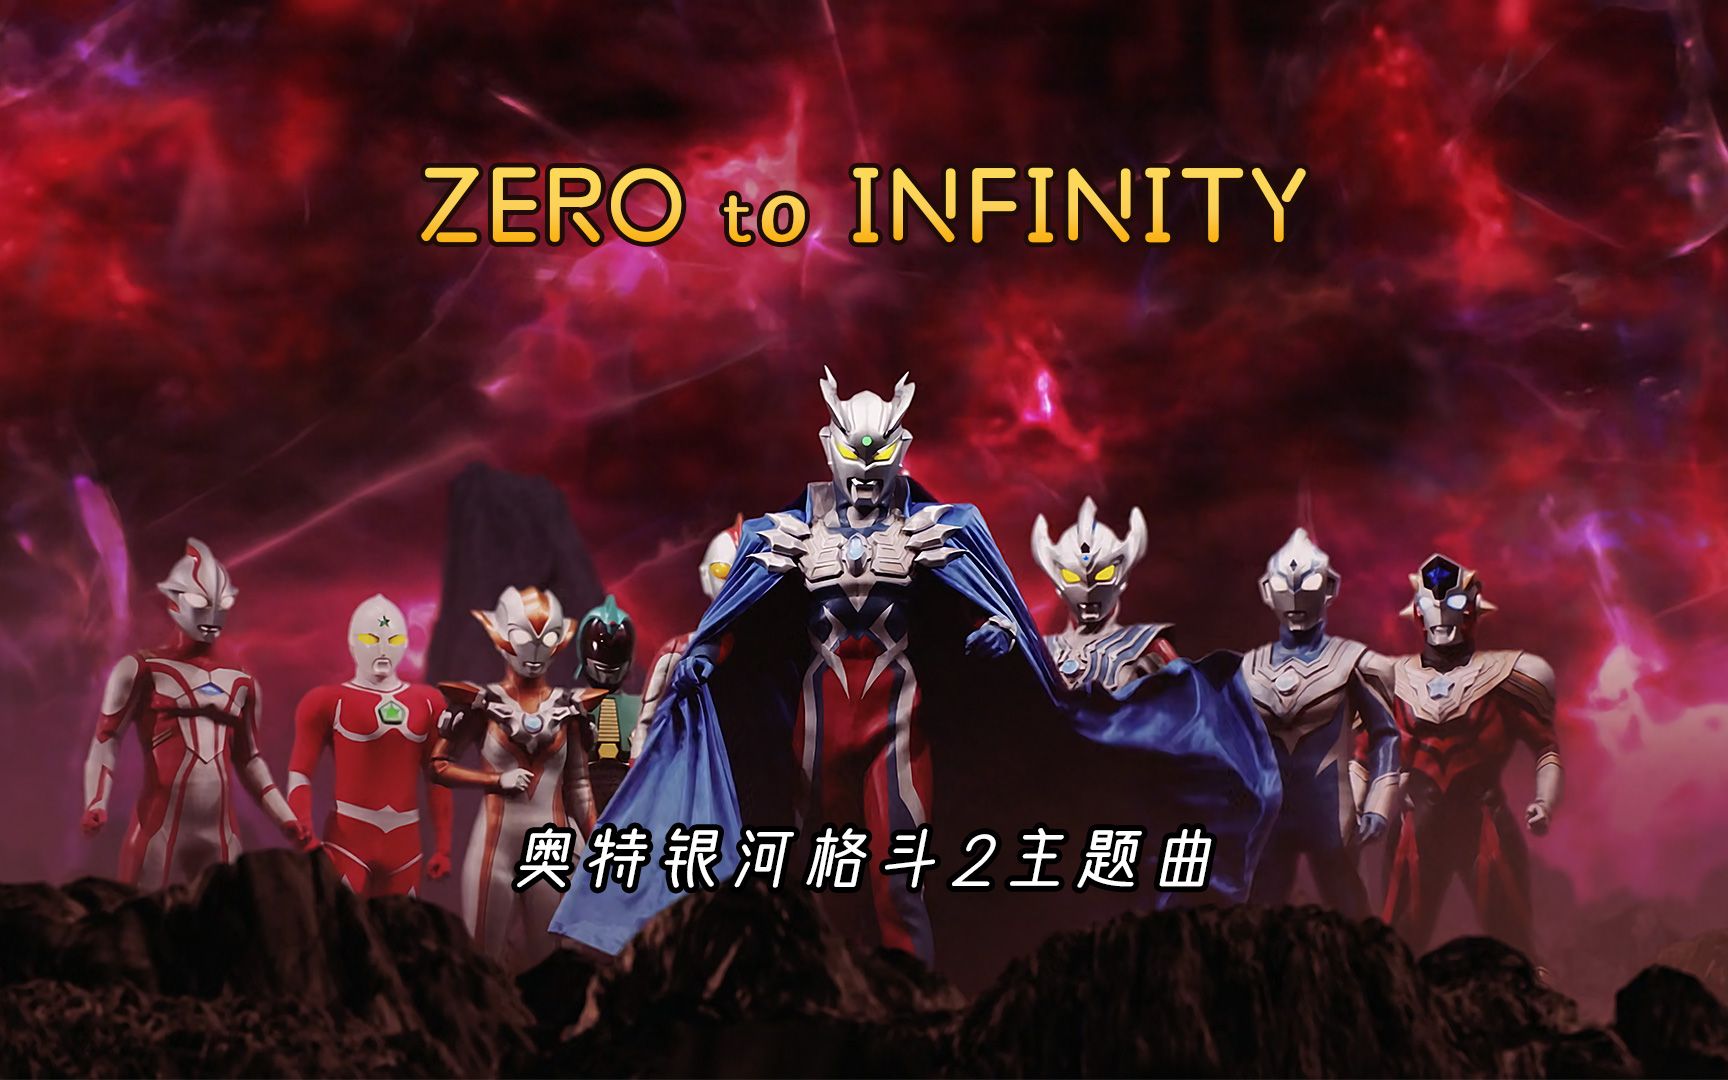 奥特银河格斗2主题曲《ZERO to INFINITY》，从零到无限大，好听